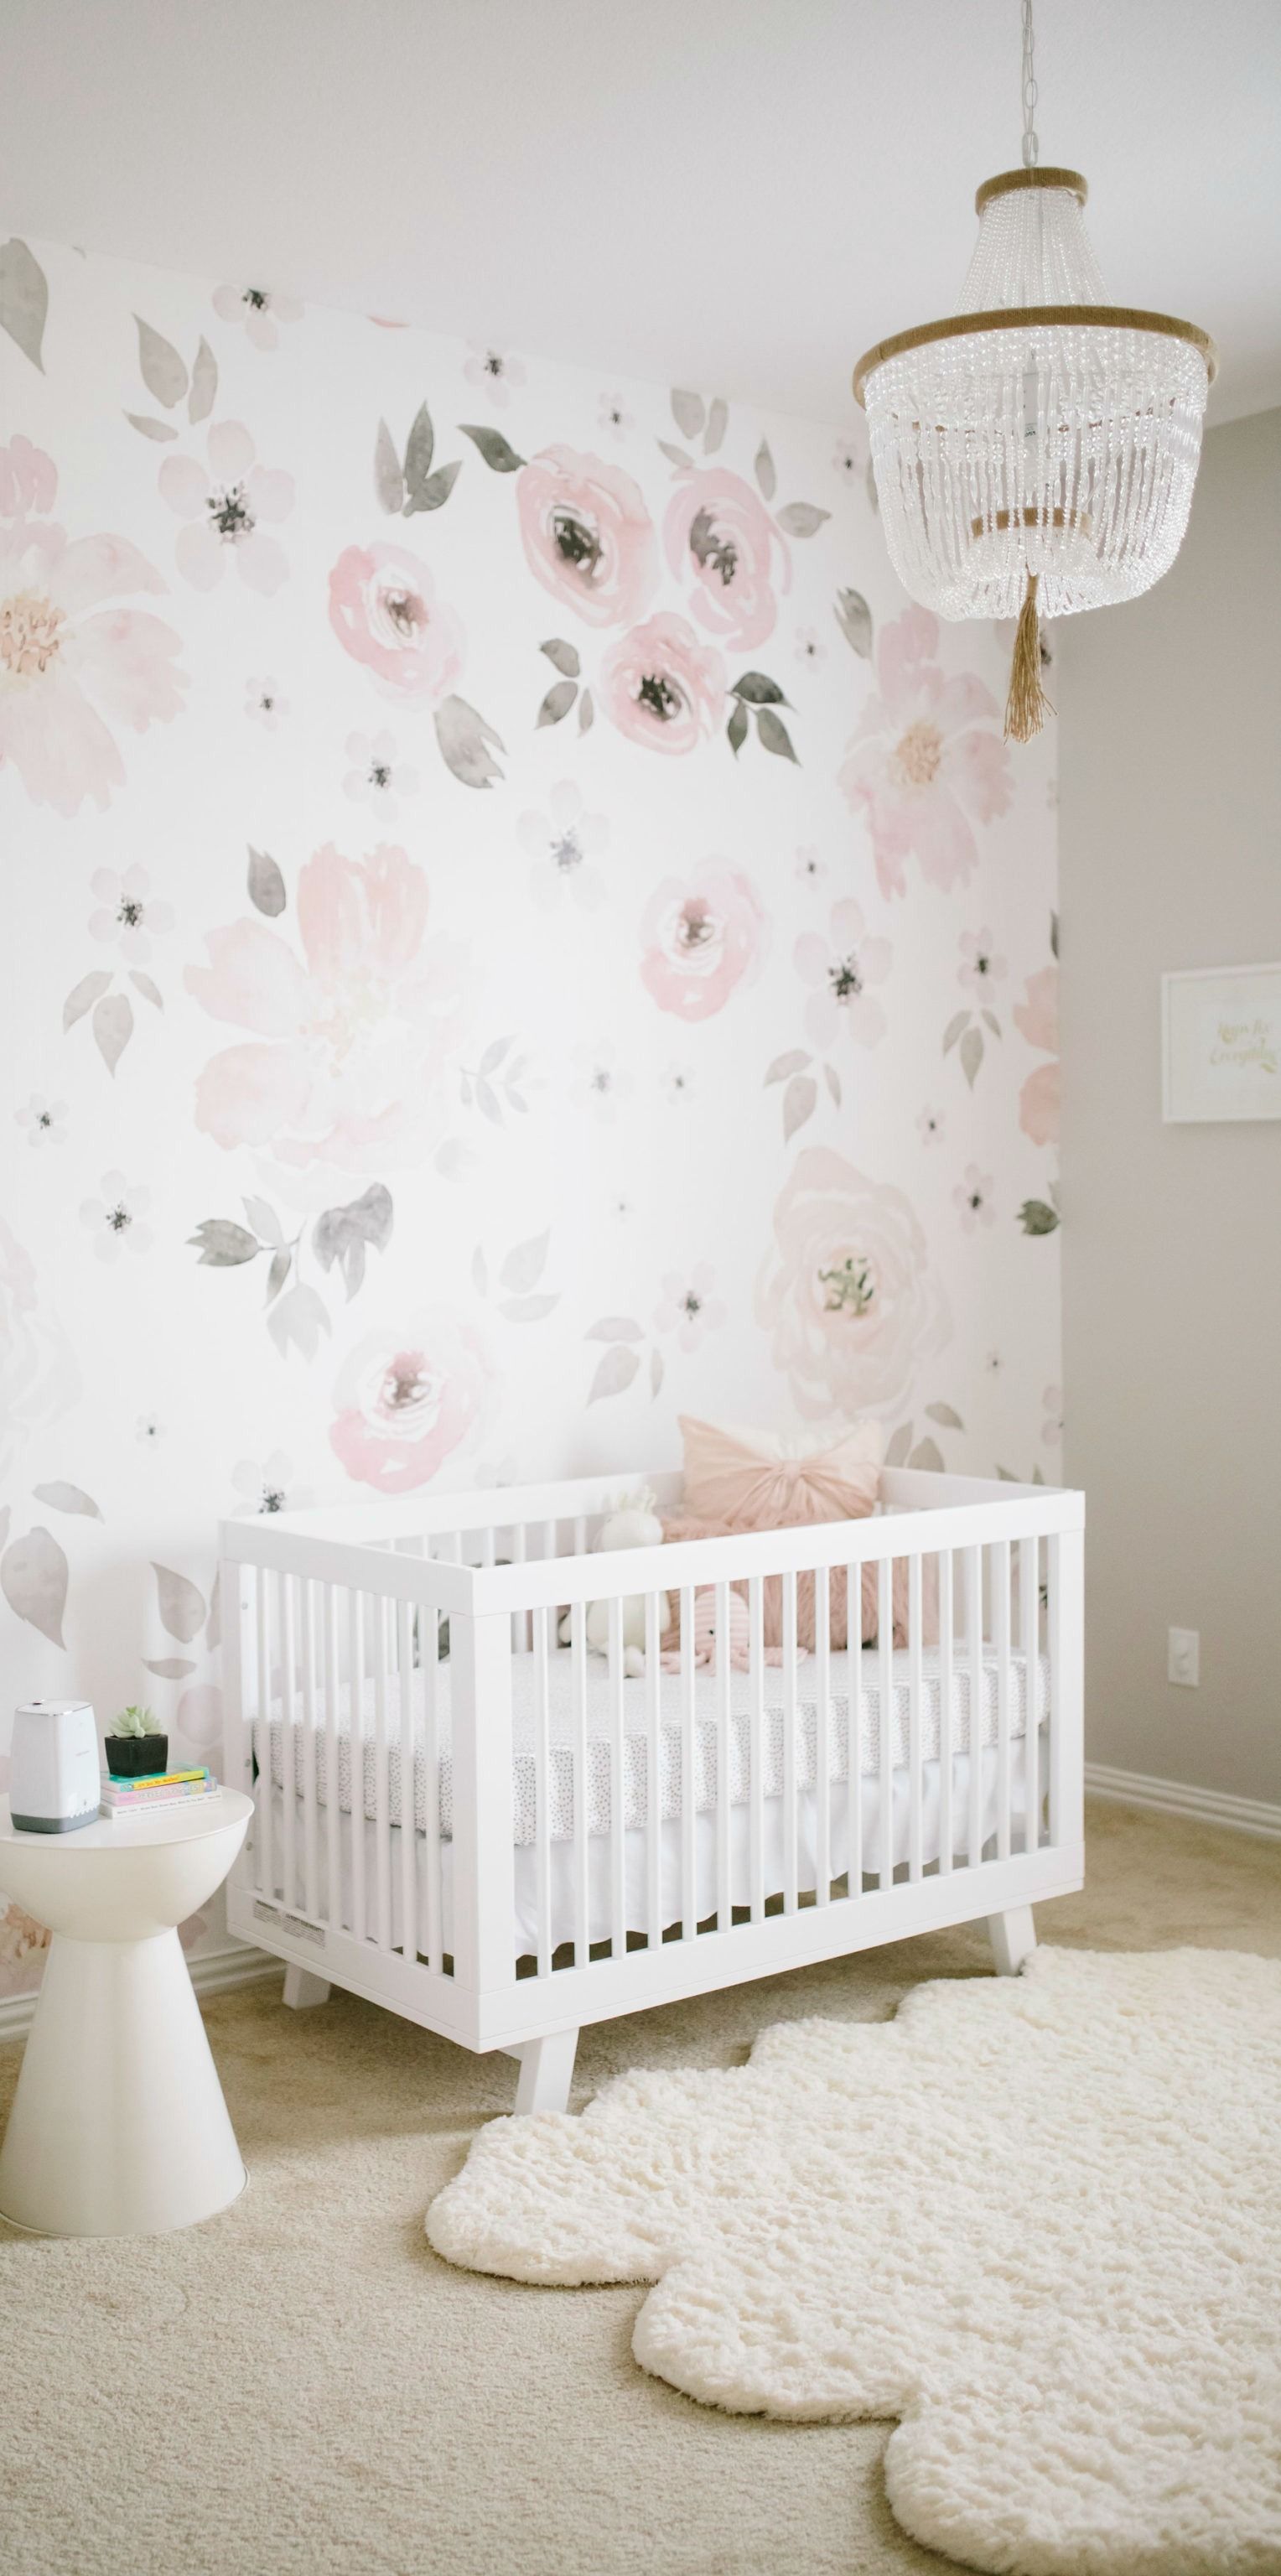 baby wallpaper design,produkt,kinderbett,weiß,zimmer,wand